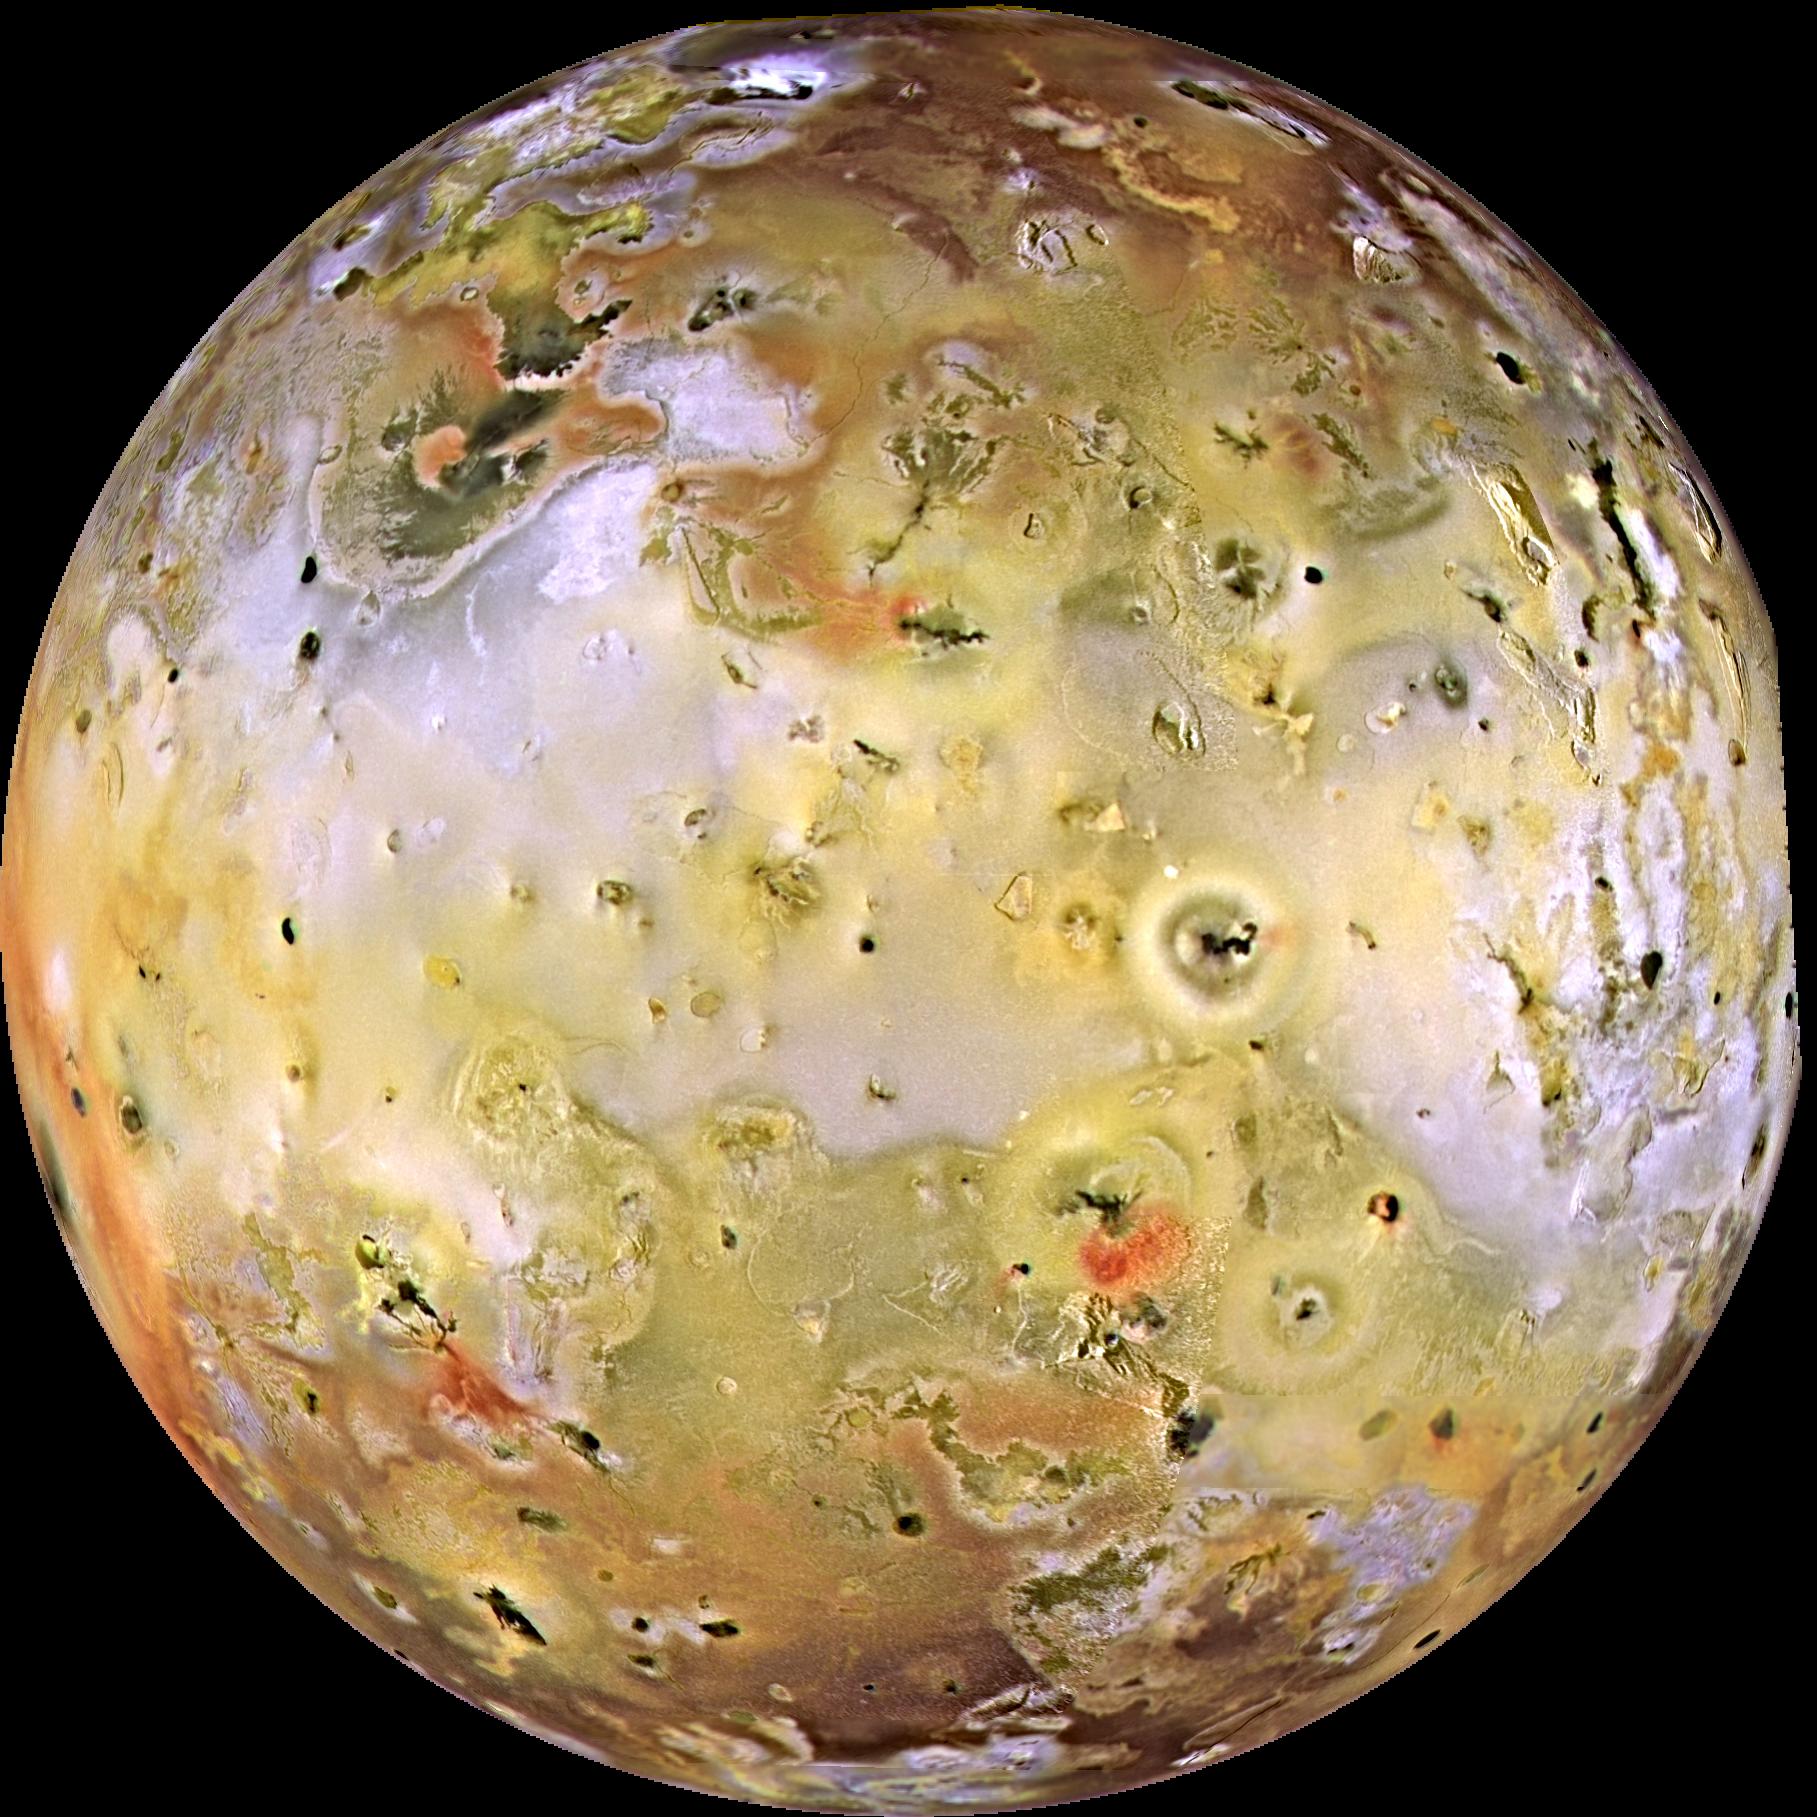 Io, one of the Galilean satellites